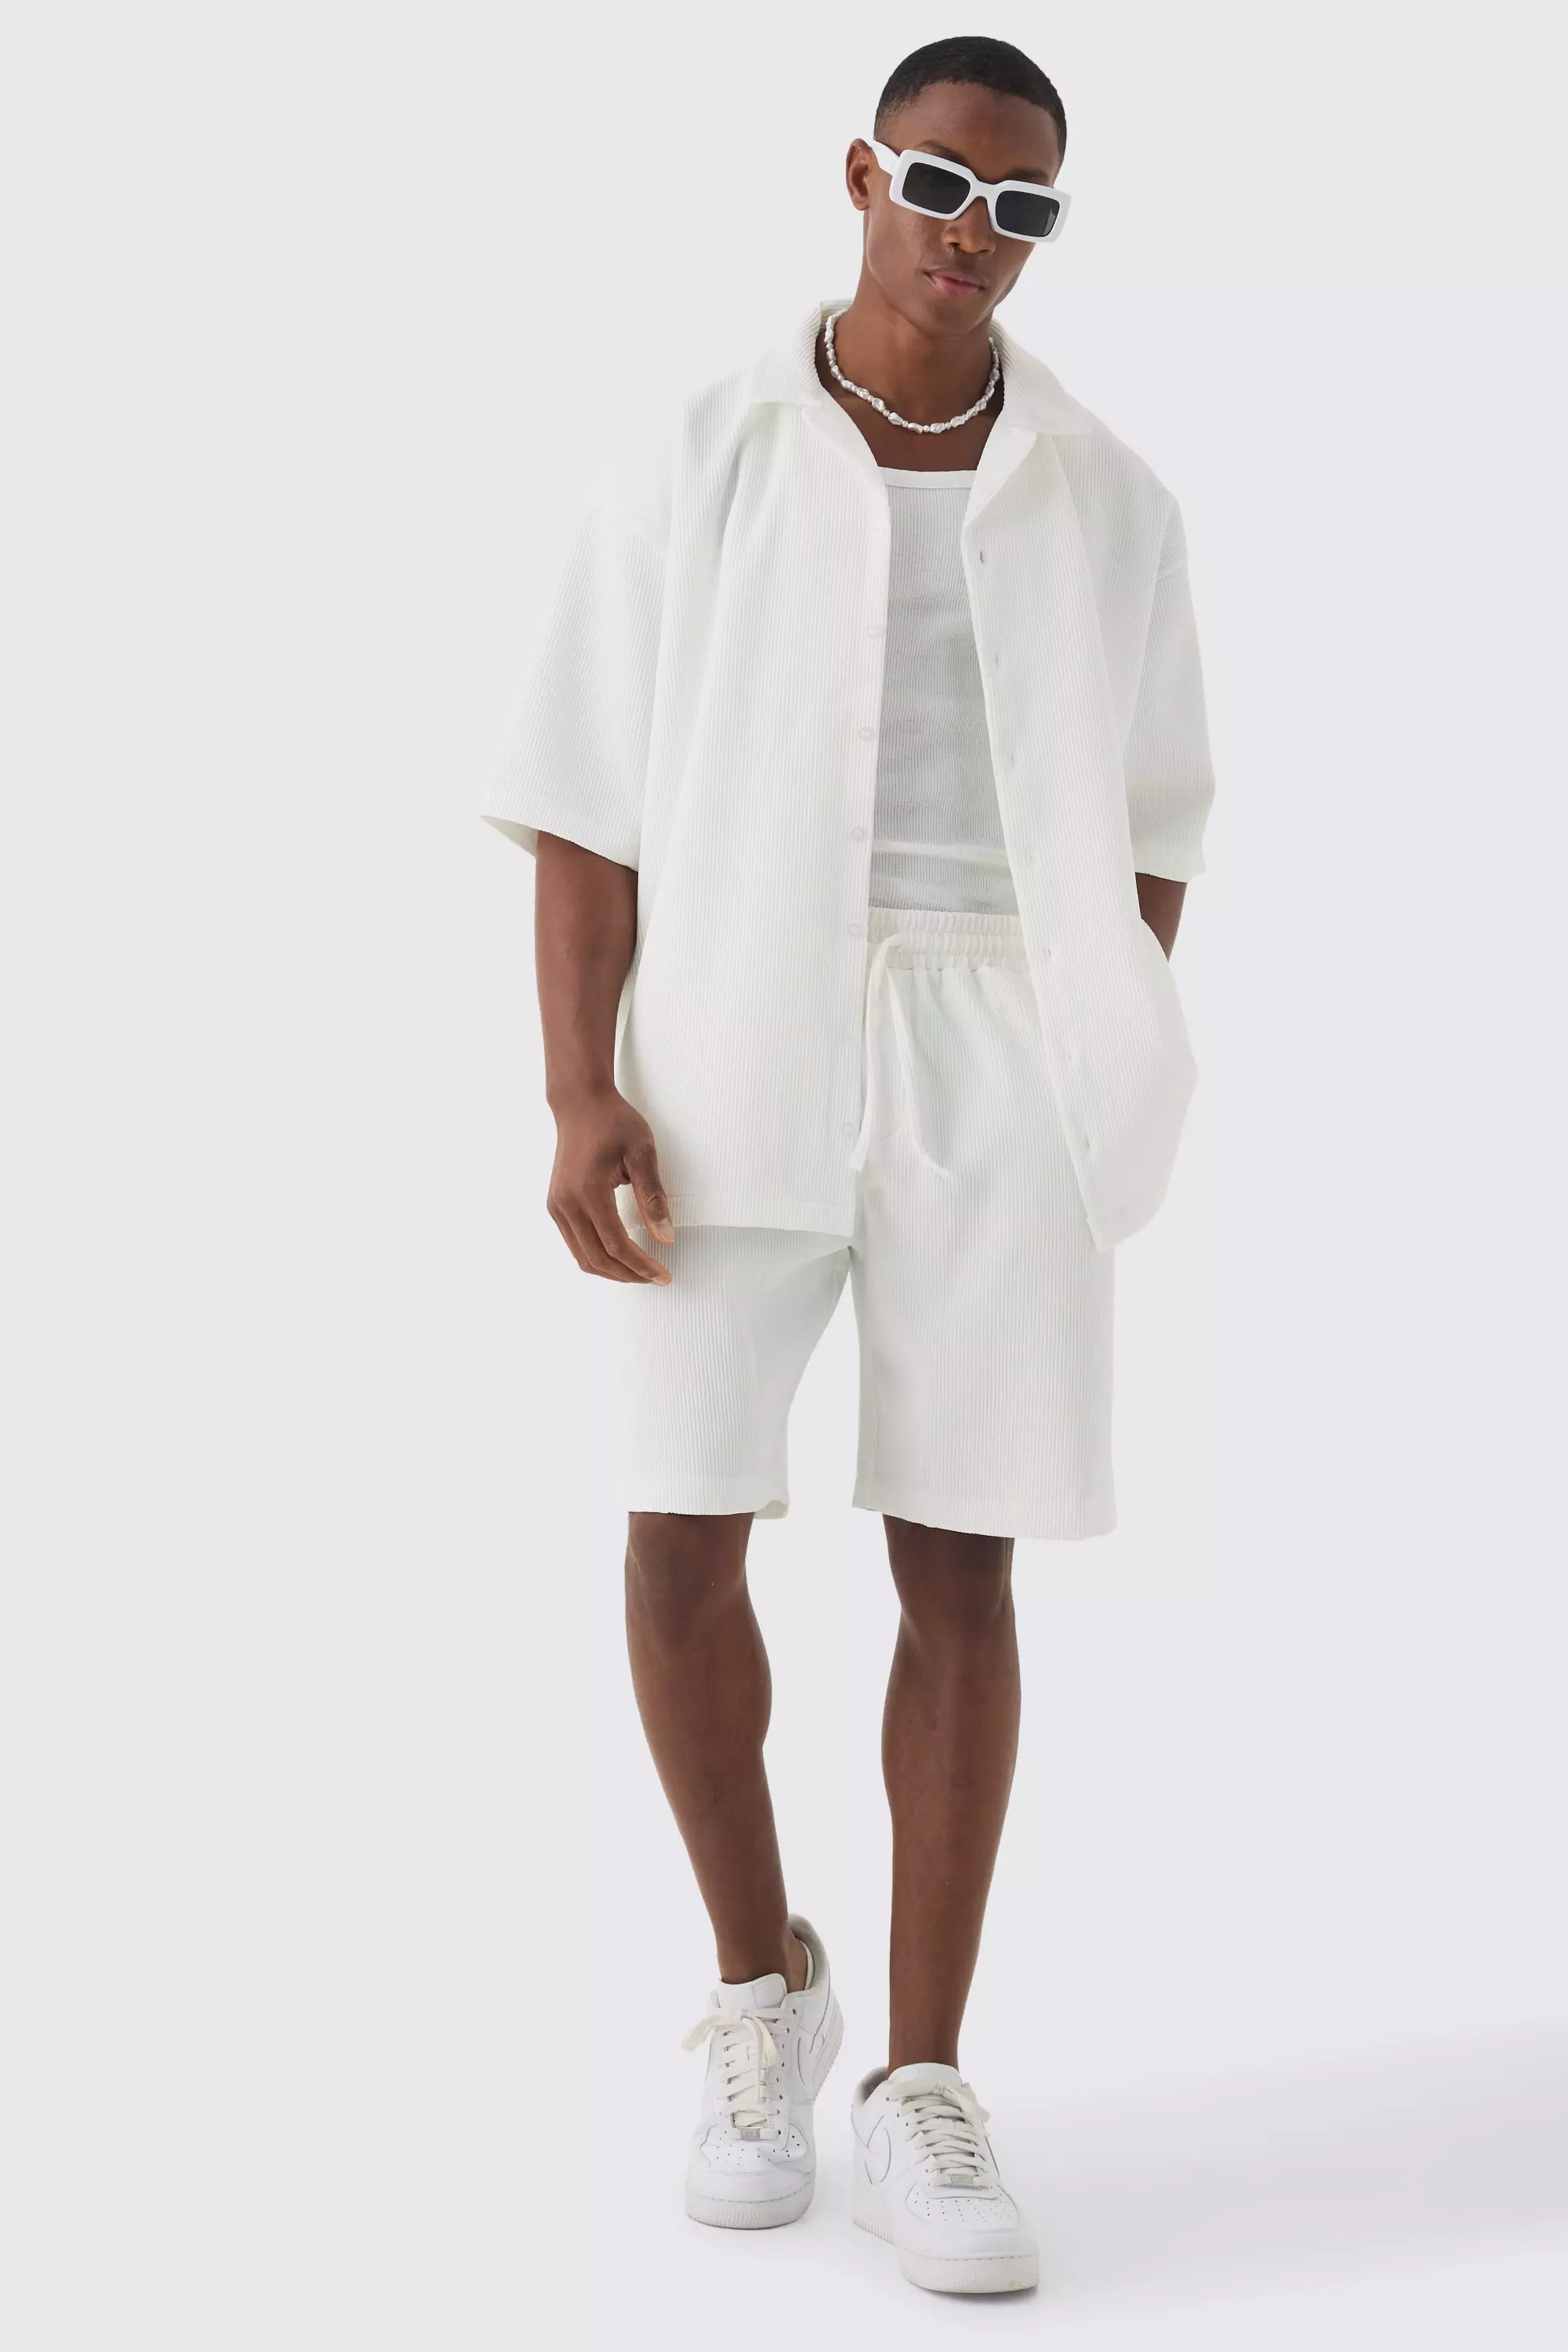 White Oversized Short Sleeve Pleated Shirt And Short